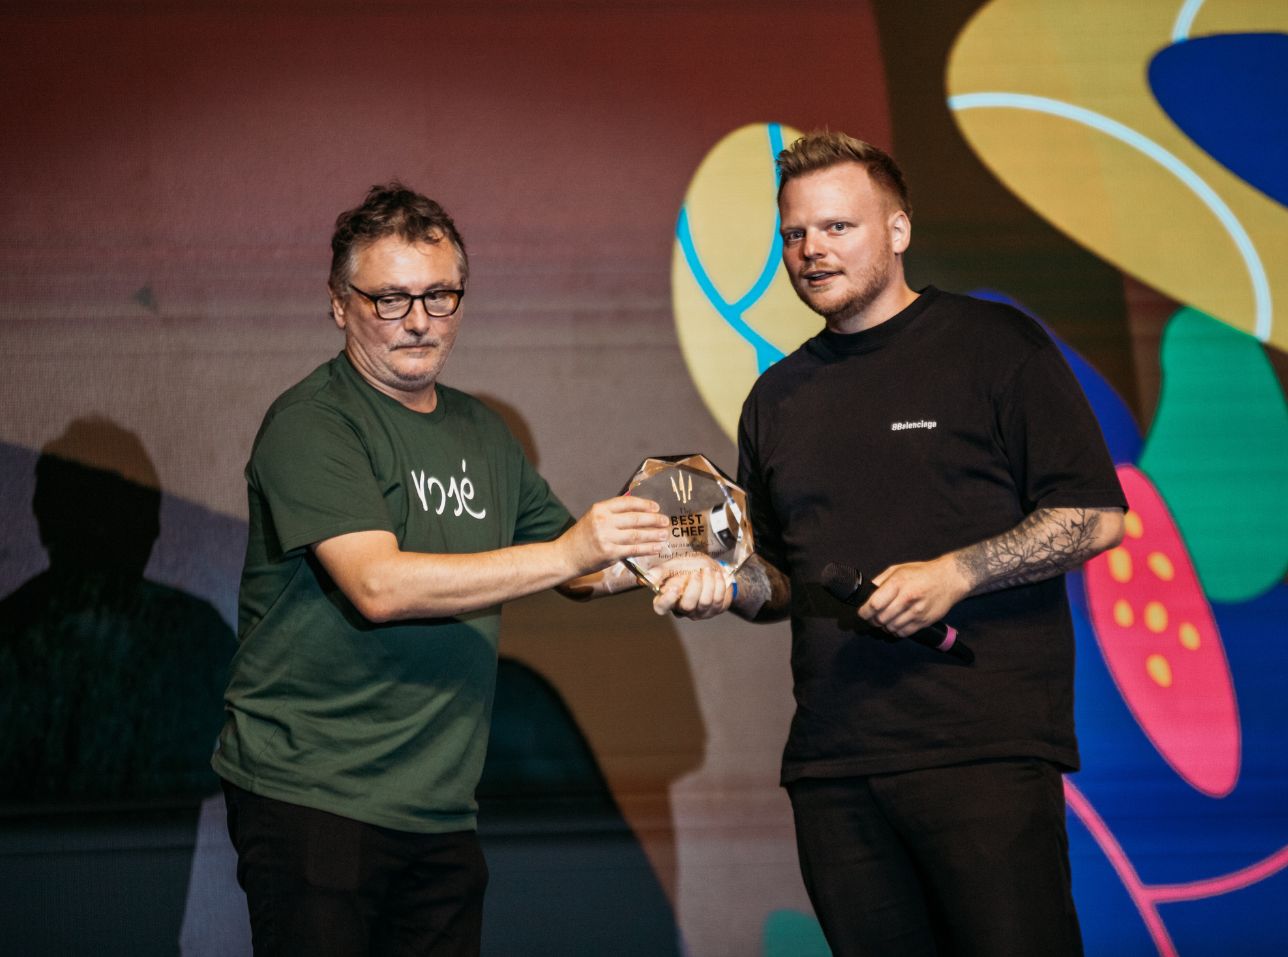 Rasmus Munk ha sido reconocido como el mejor chef votado por los profesionales